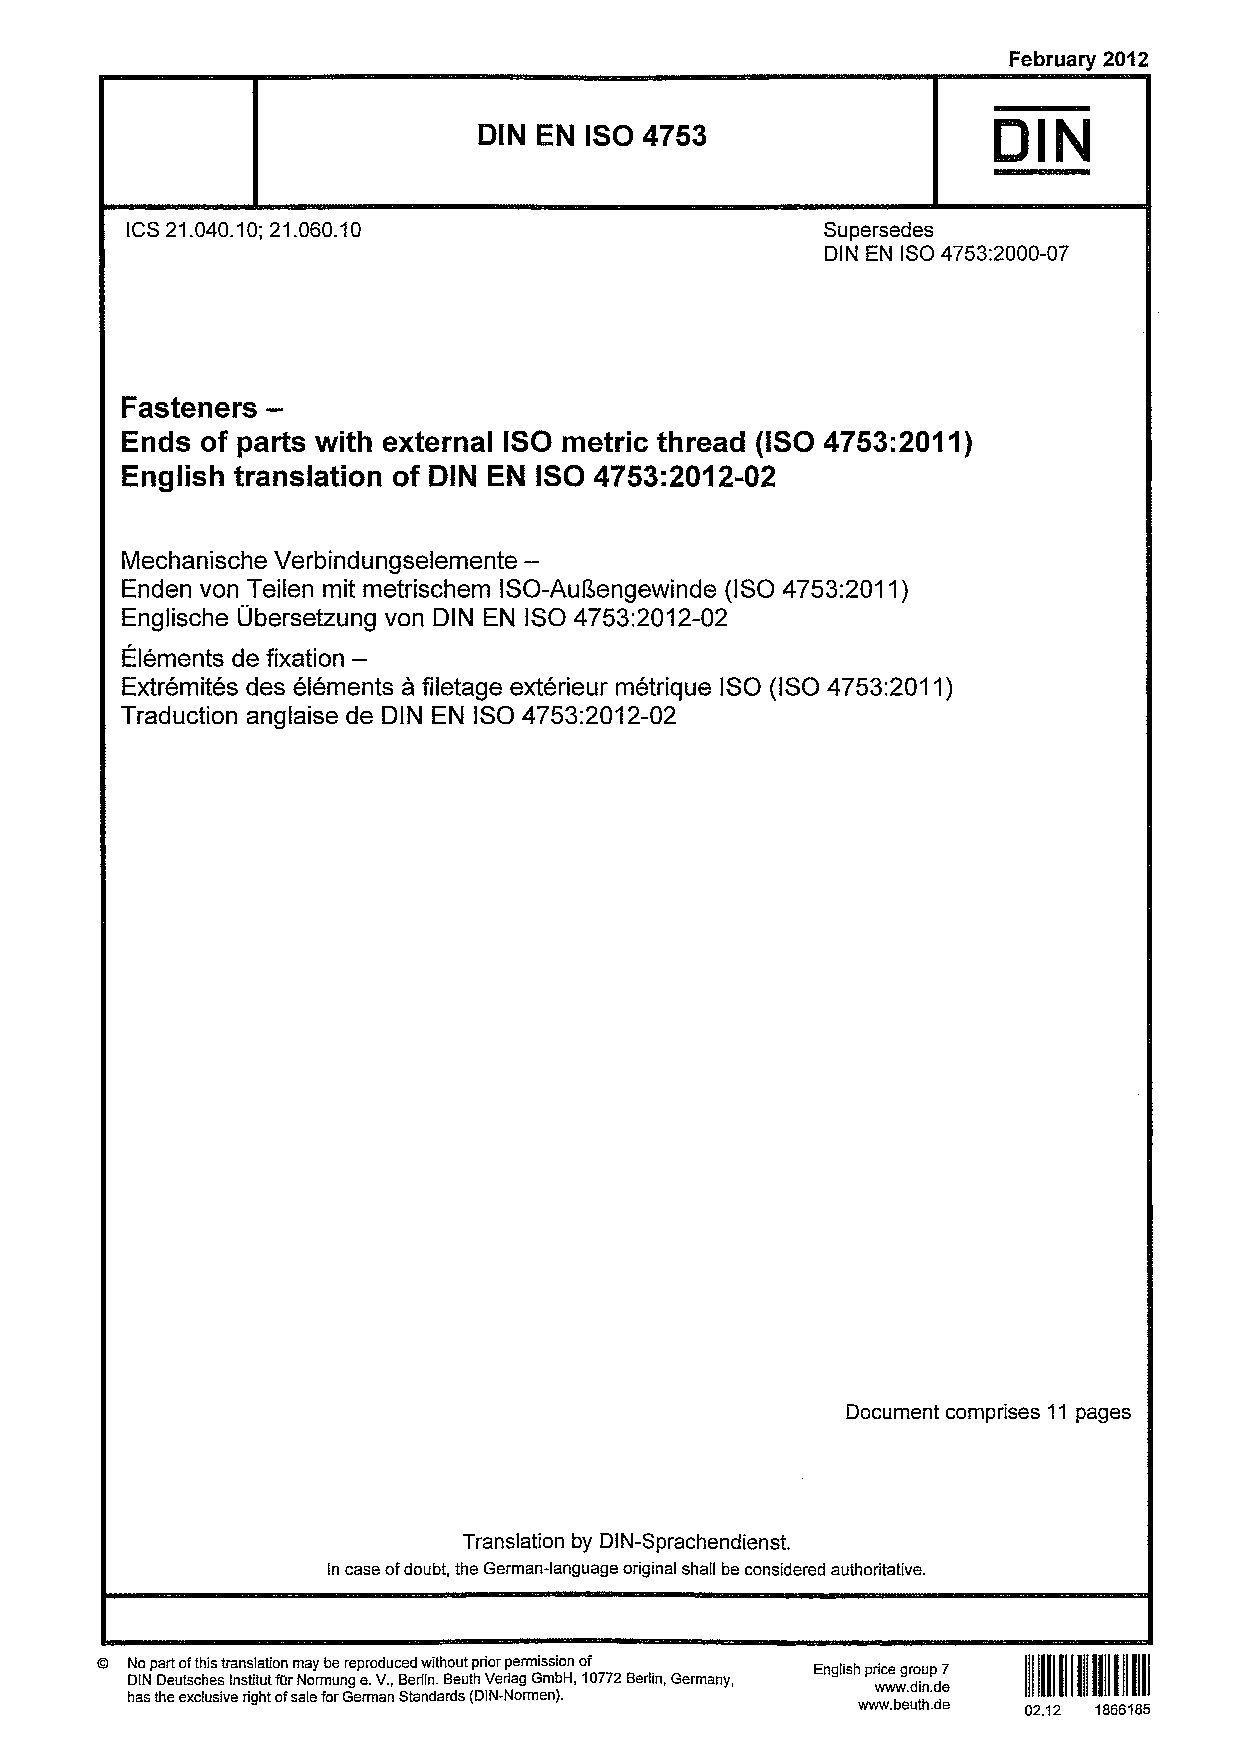 DIN EN ISO 4753:2012-02